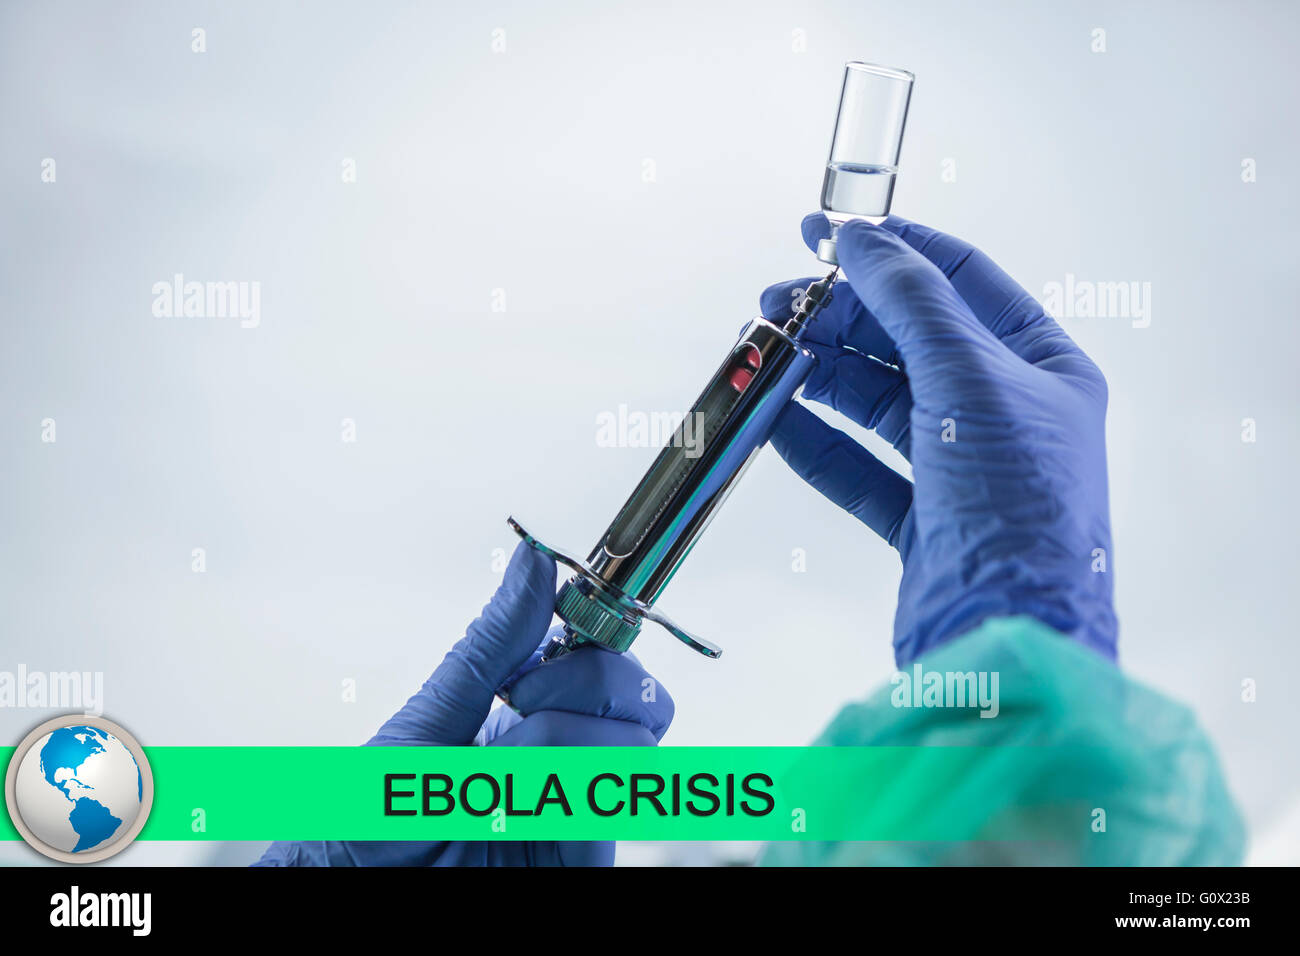 Digitalen Verbund von Ebola-News-Flash mit medizinischen Bildern Stockfoto